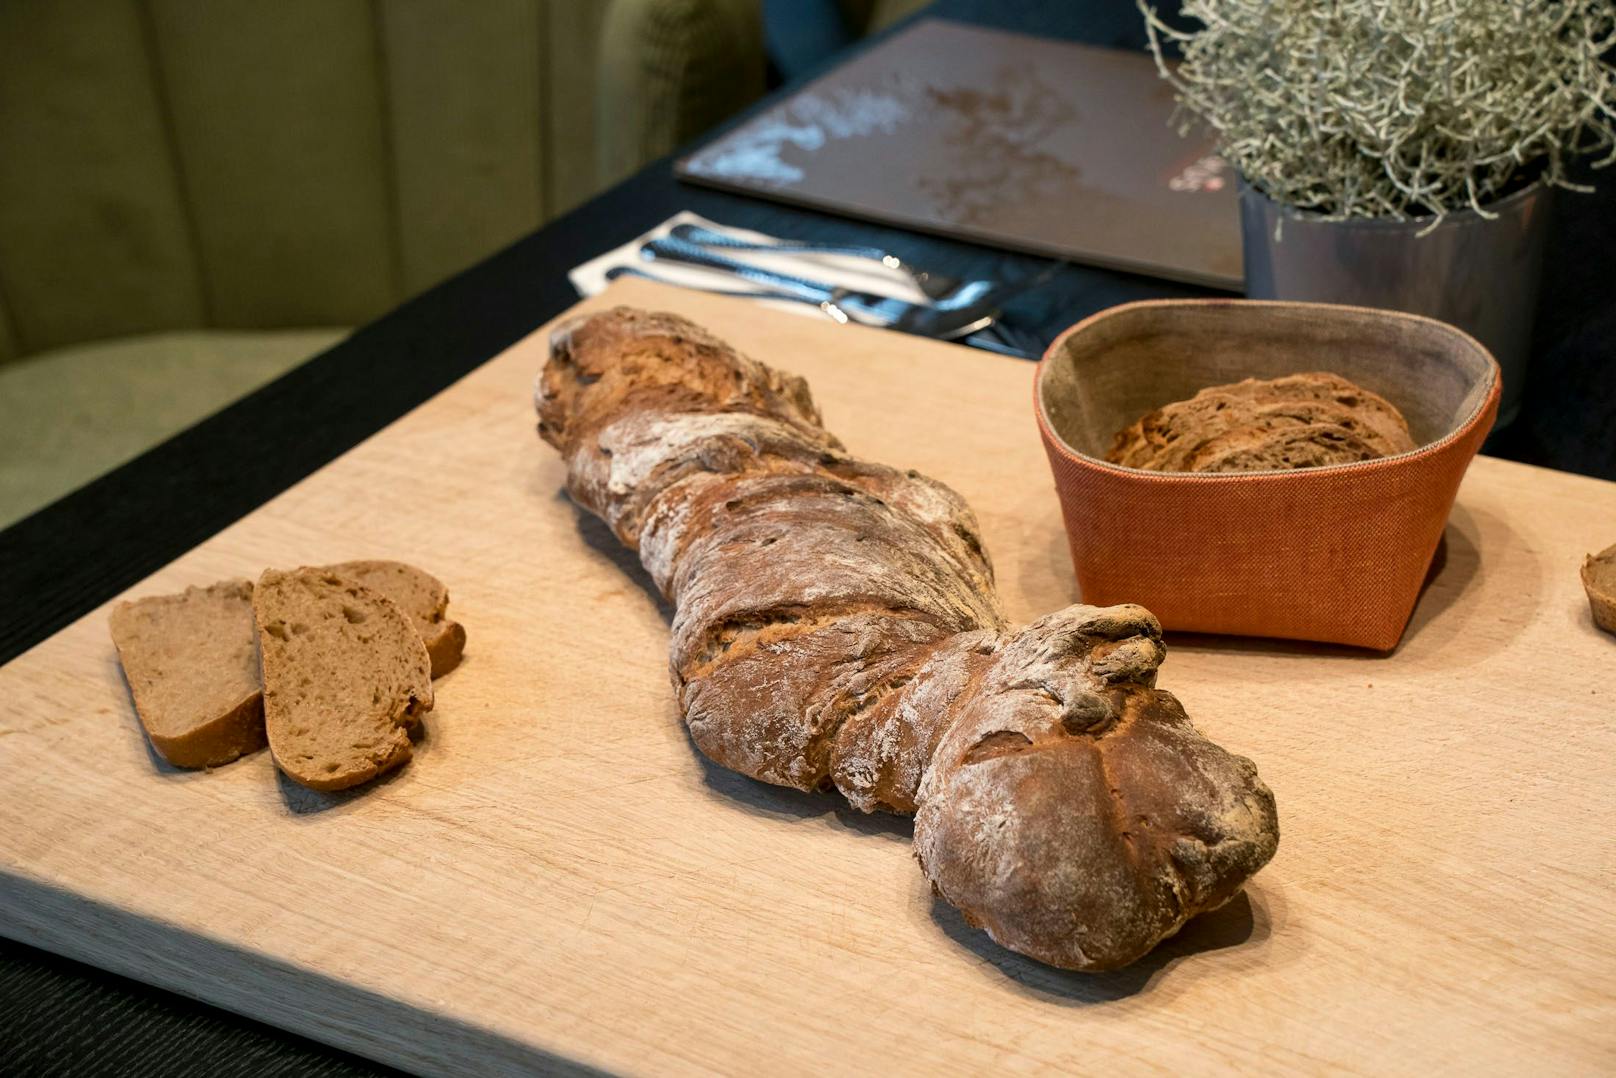 Das Brot wird selbst gebacken und kann to go gekauft werden für fünf Euro